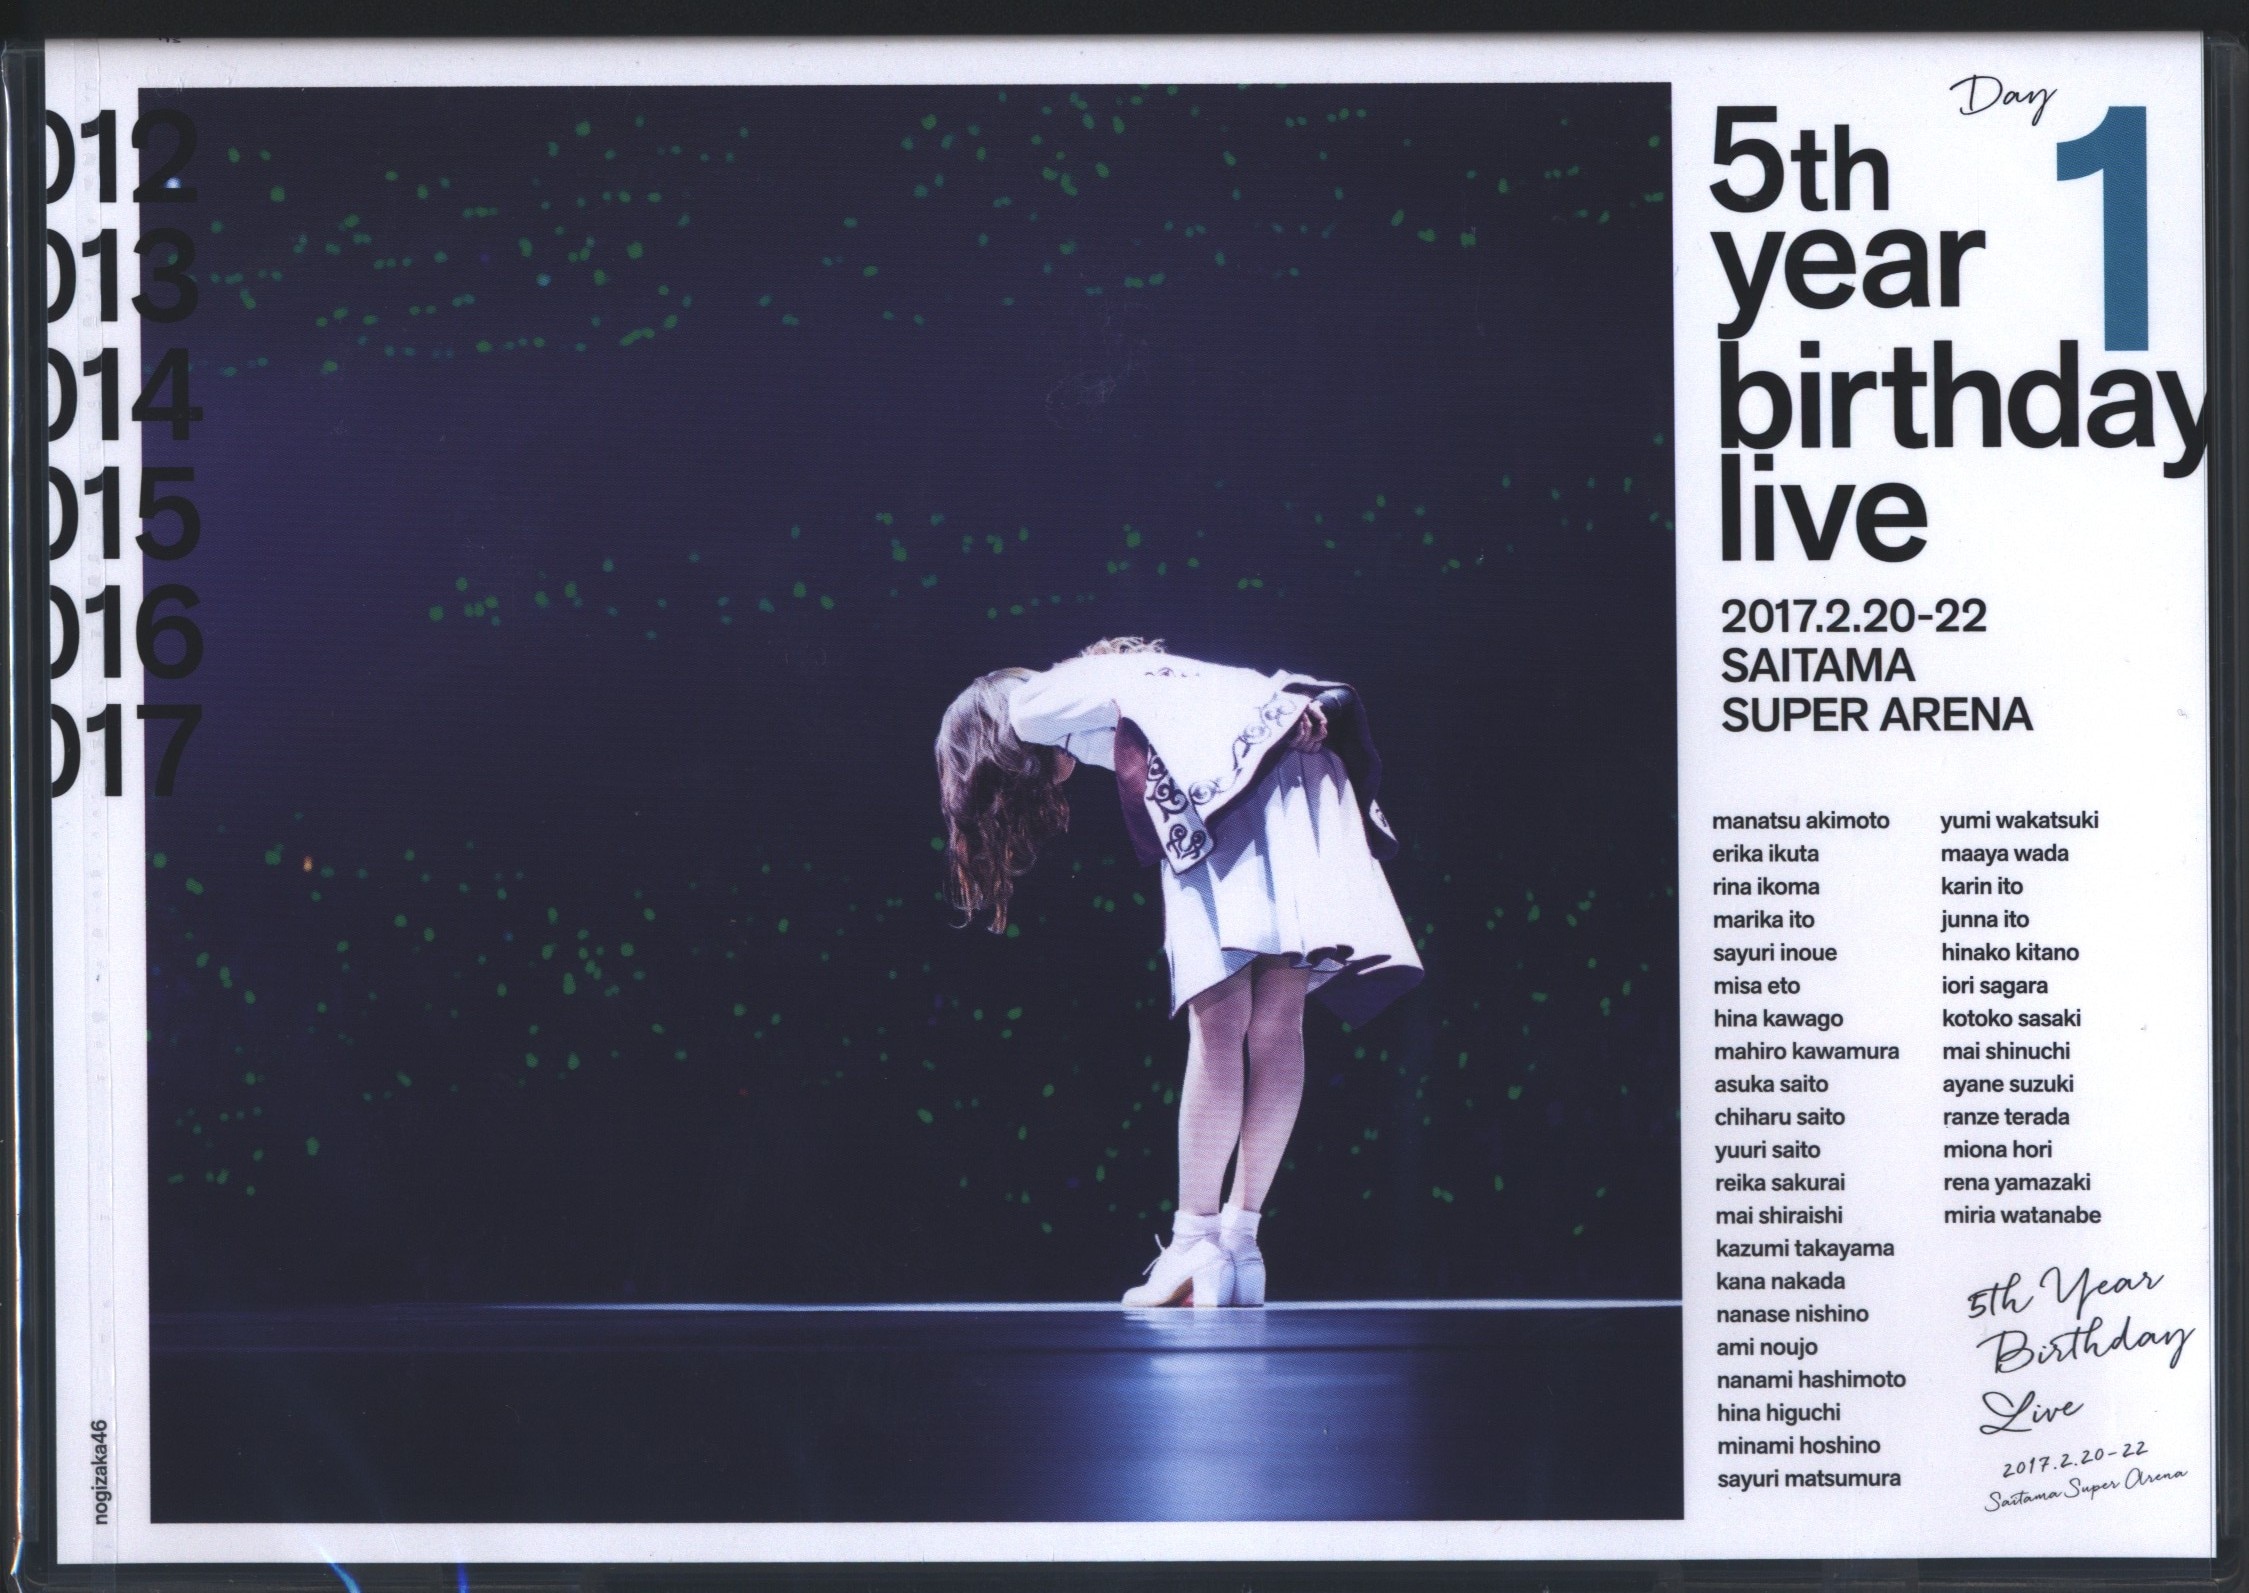 乃木坂46 5th YEAR BIRTHDAY LIVE 2017.2.20-22 SAITAMA SUPER ARENA